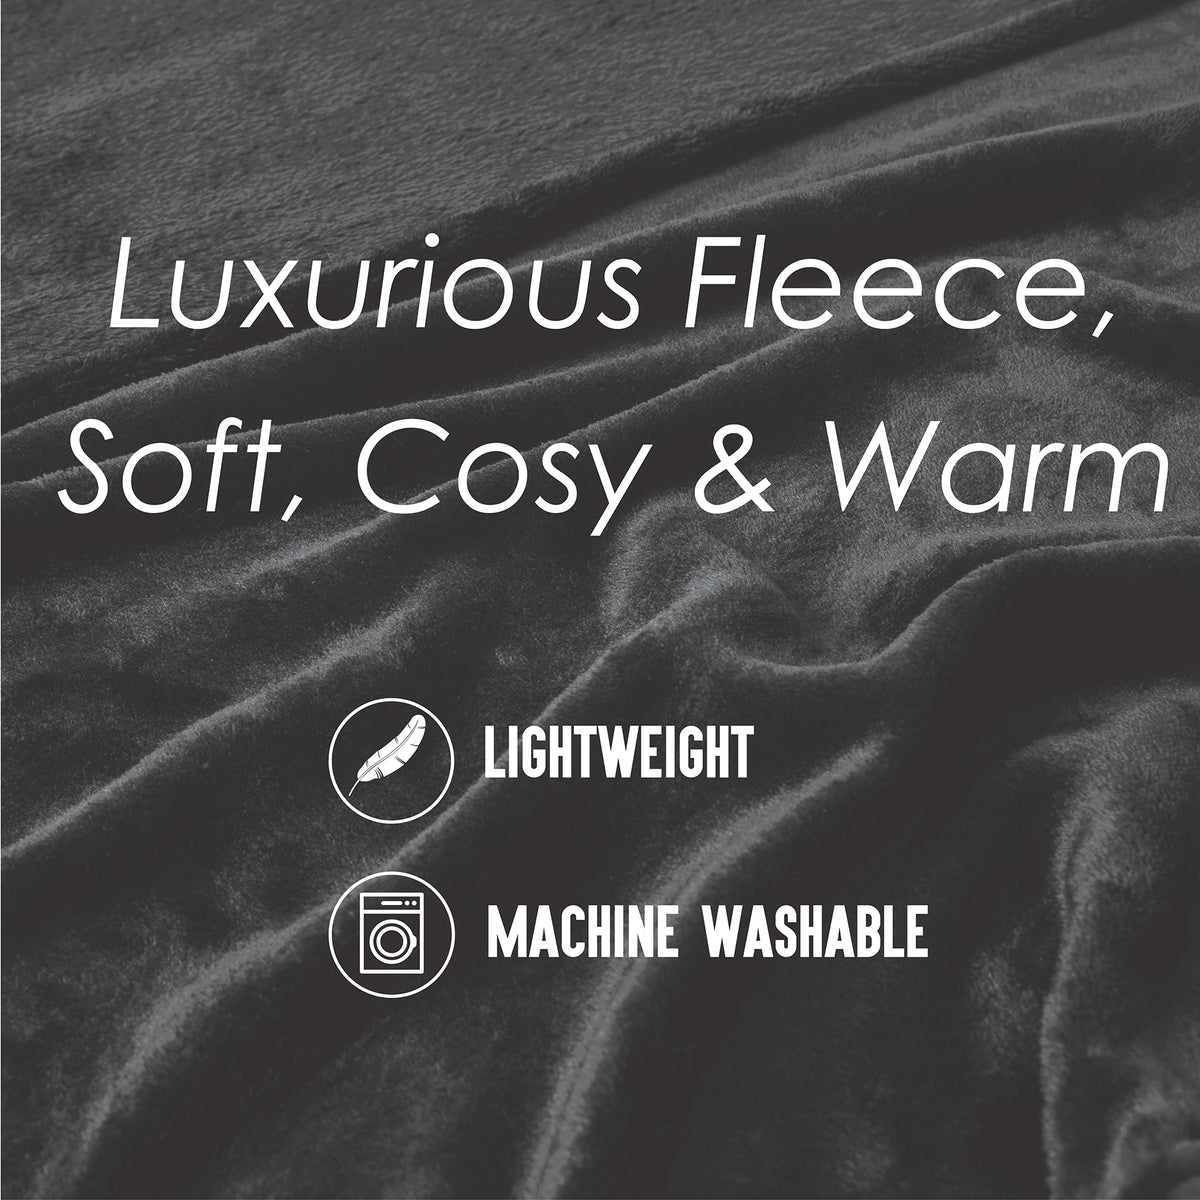 Flannel Fleece Blanket Dark Grey